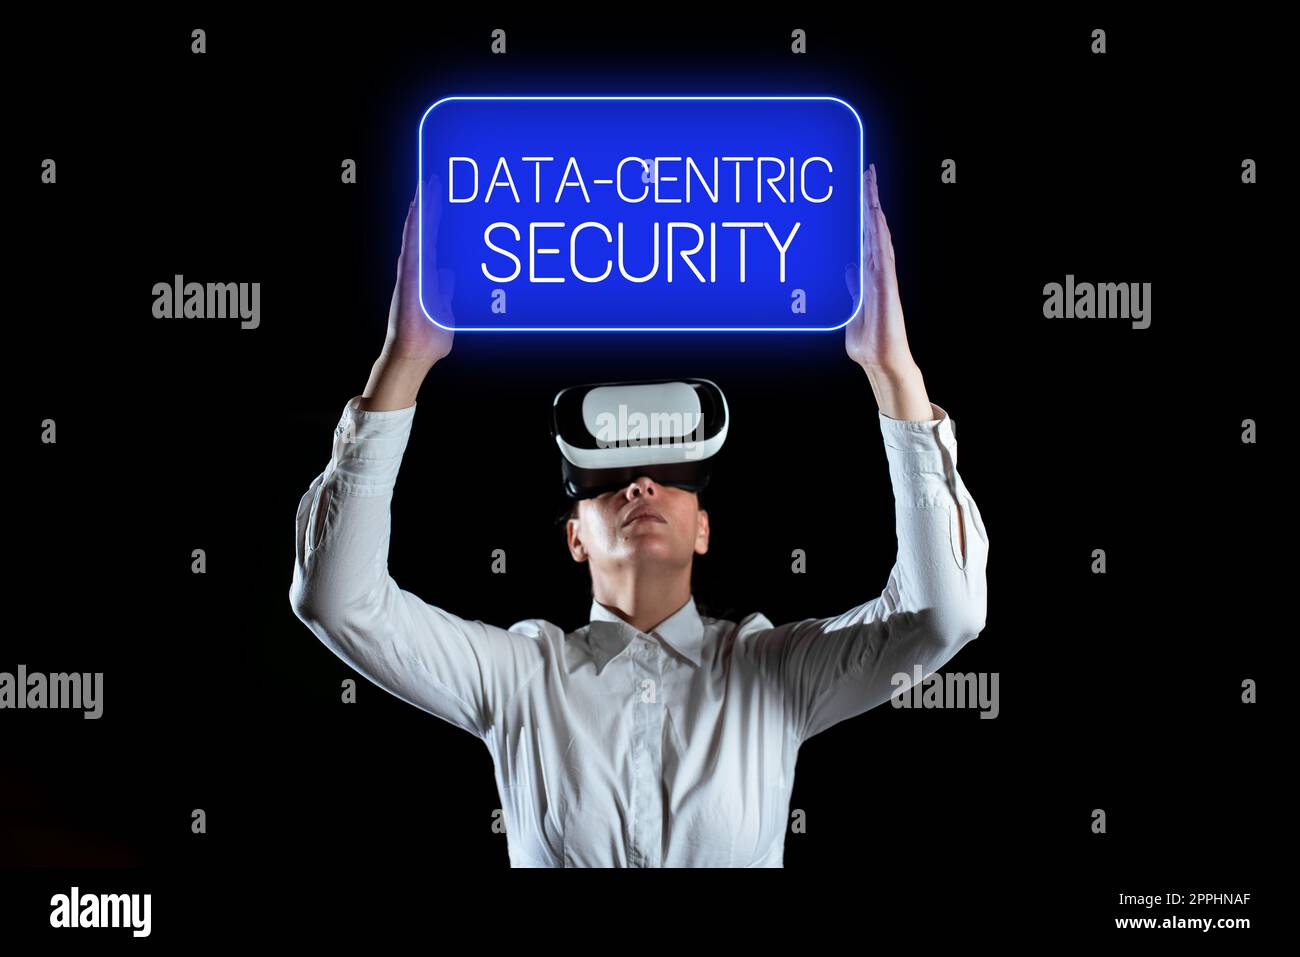 Légende présentant la sécurité centrée sur les données. Le mot écrit sur implique les valeurs extraites de la base de données par le Web Banque D'Images